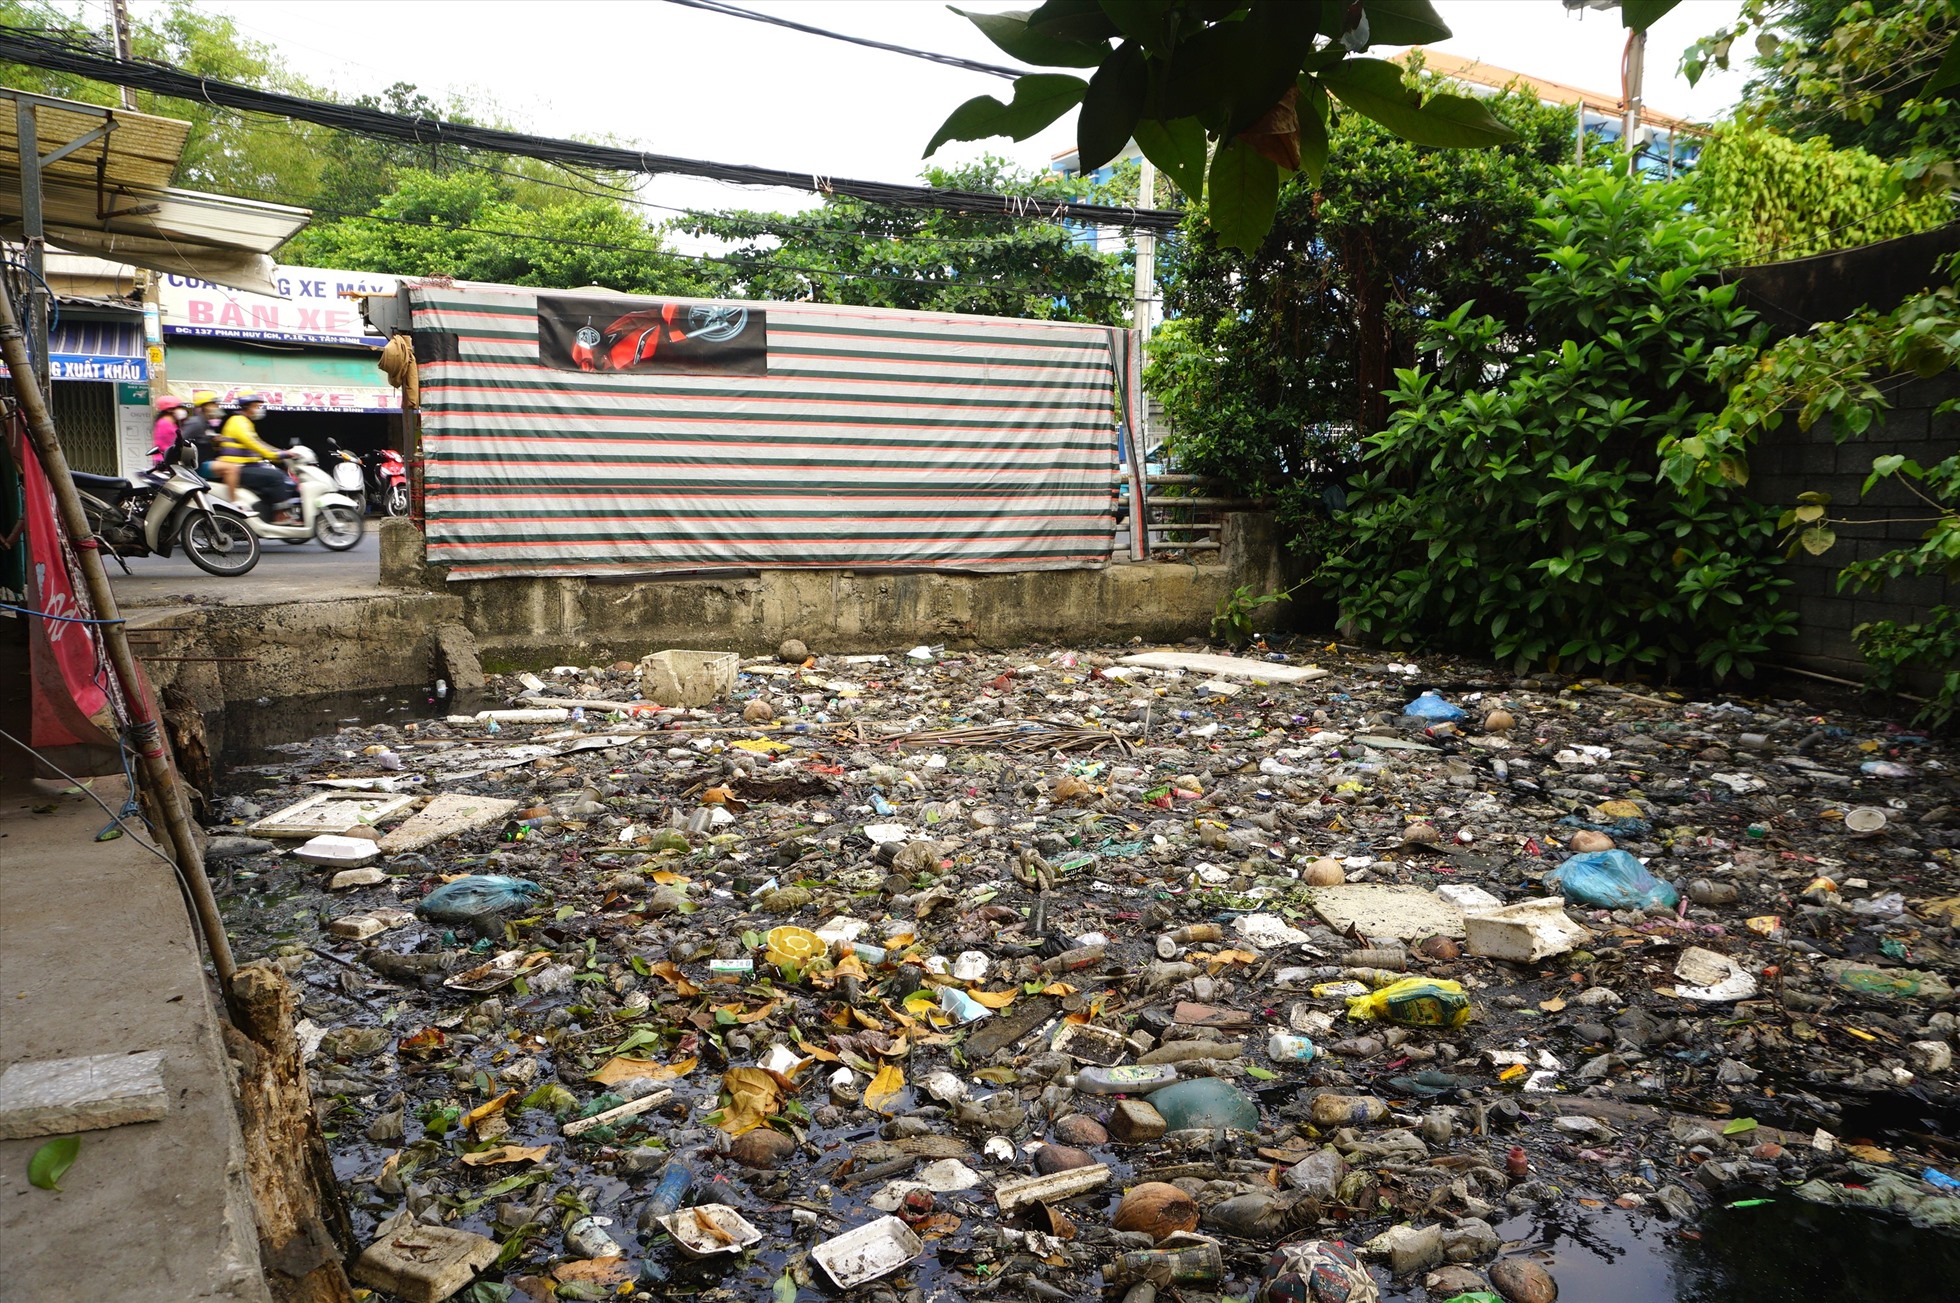 Ghi nhận ngày 25.2, kênh Hy Vọng - đoạn chảy qua đường Phan Huy Ích (phường 15, quận Tân Bính) ngập kín rác tạo thành “dòng kênh” nổi lềnh bềnh toàn hộp xốp, túi ni lông, chai lọ.